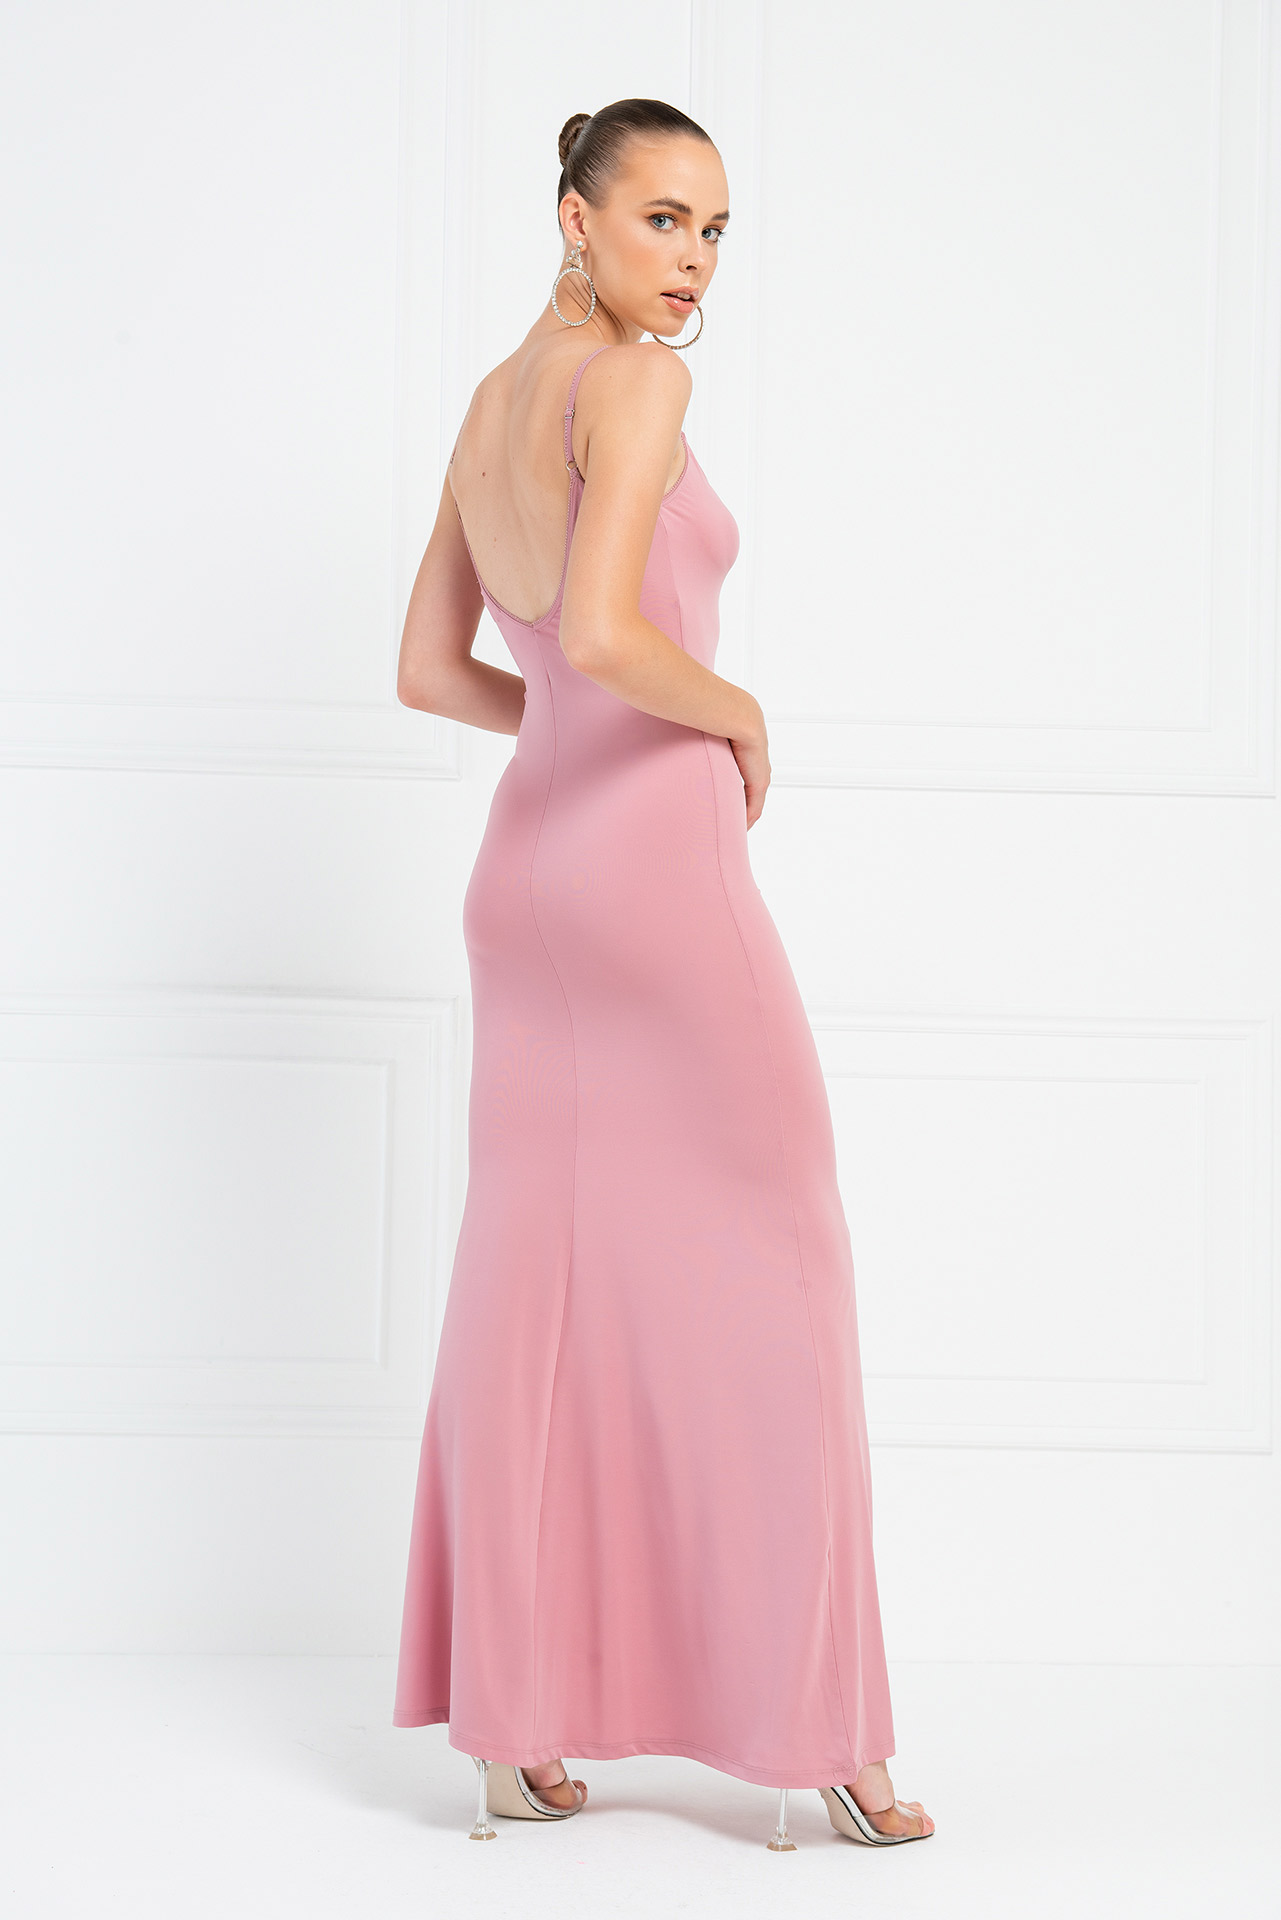 Light Rose Платье Макси с V-Образным Вырезом